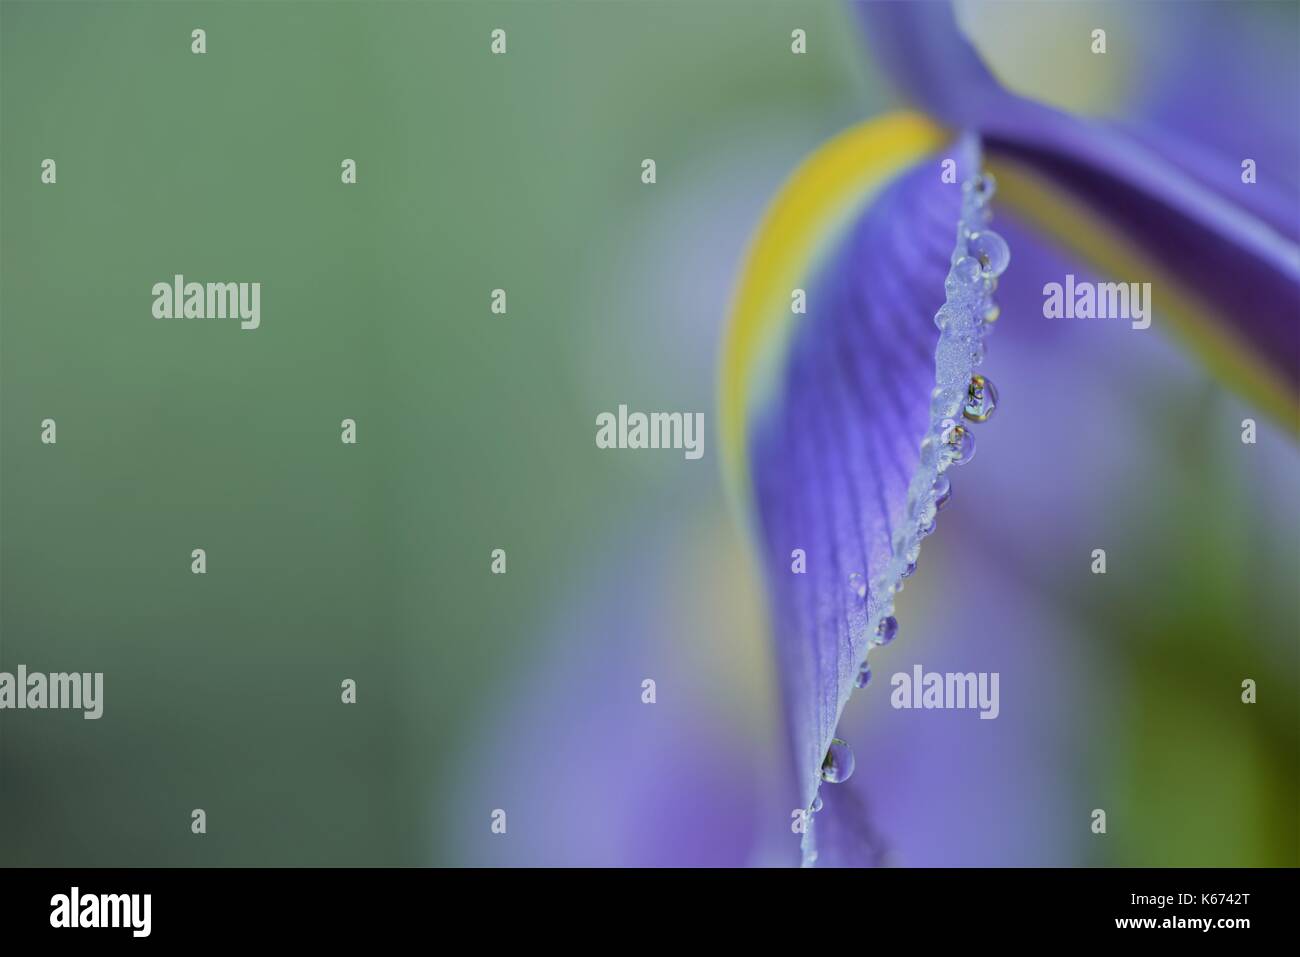 Nahaufnahme Makro Blume fotografie Bild mit violett blau Farbe Iris mit Regen fällt auf die Blütenblätter und grünen Garten blur Hintergrund und Kopie Raum Stockfoto